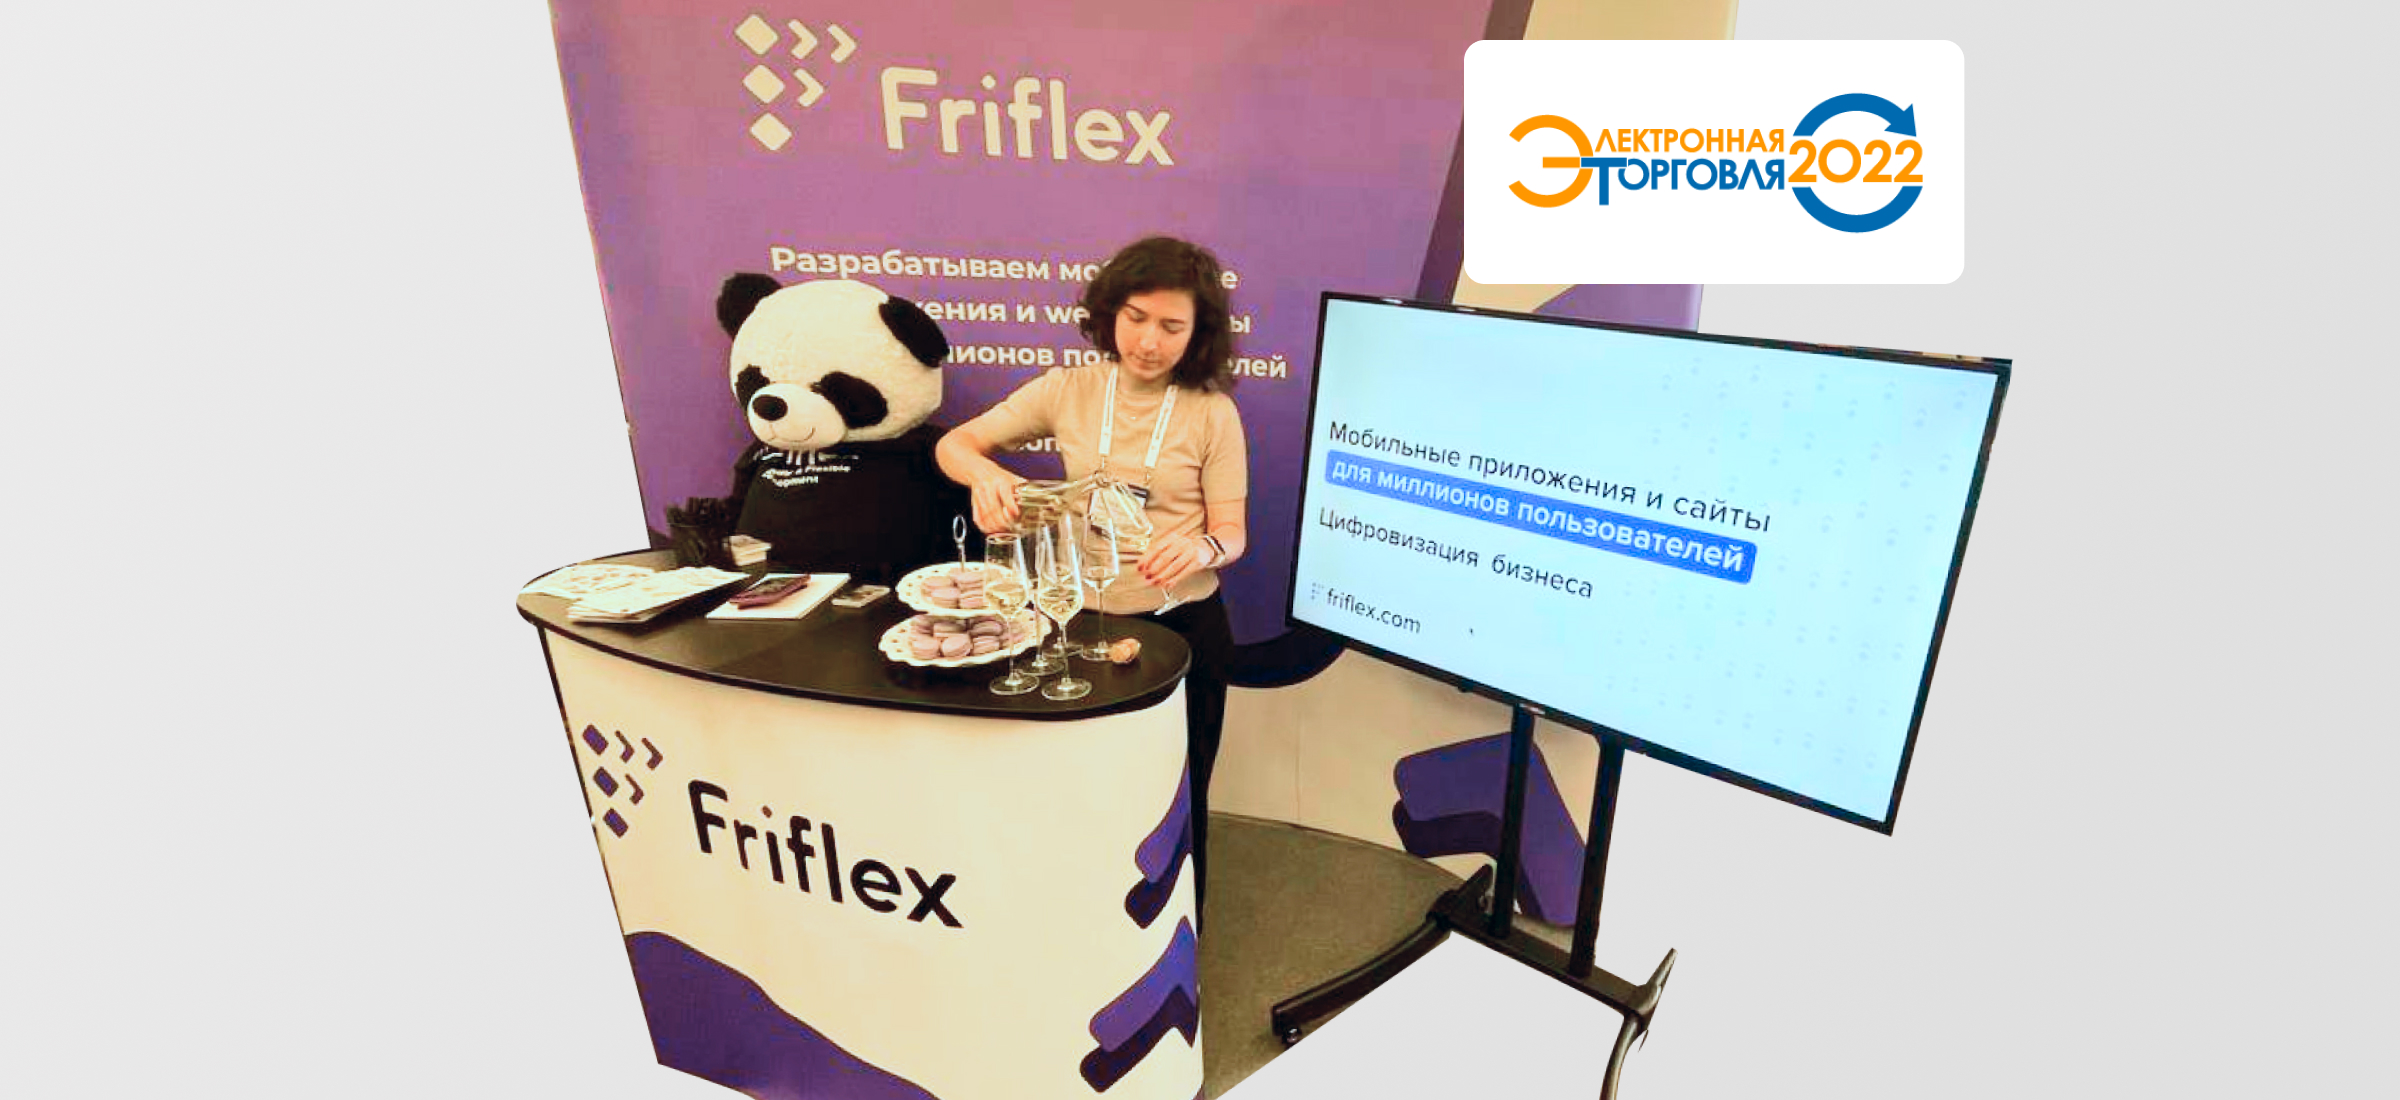 Friflex – золотой партнер конференции «Электронная торговля 2022»